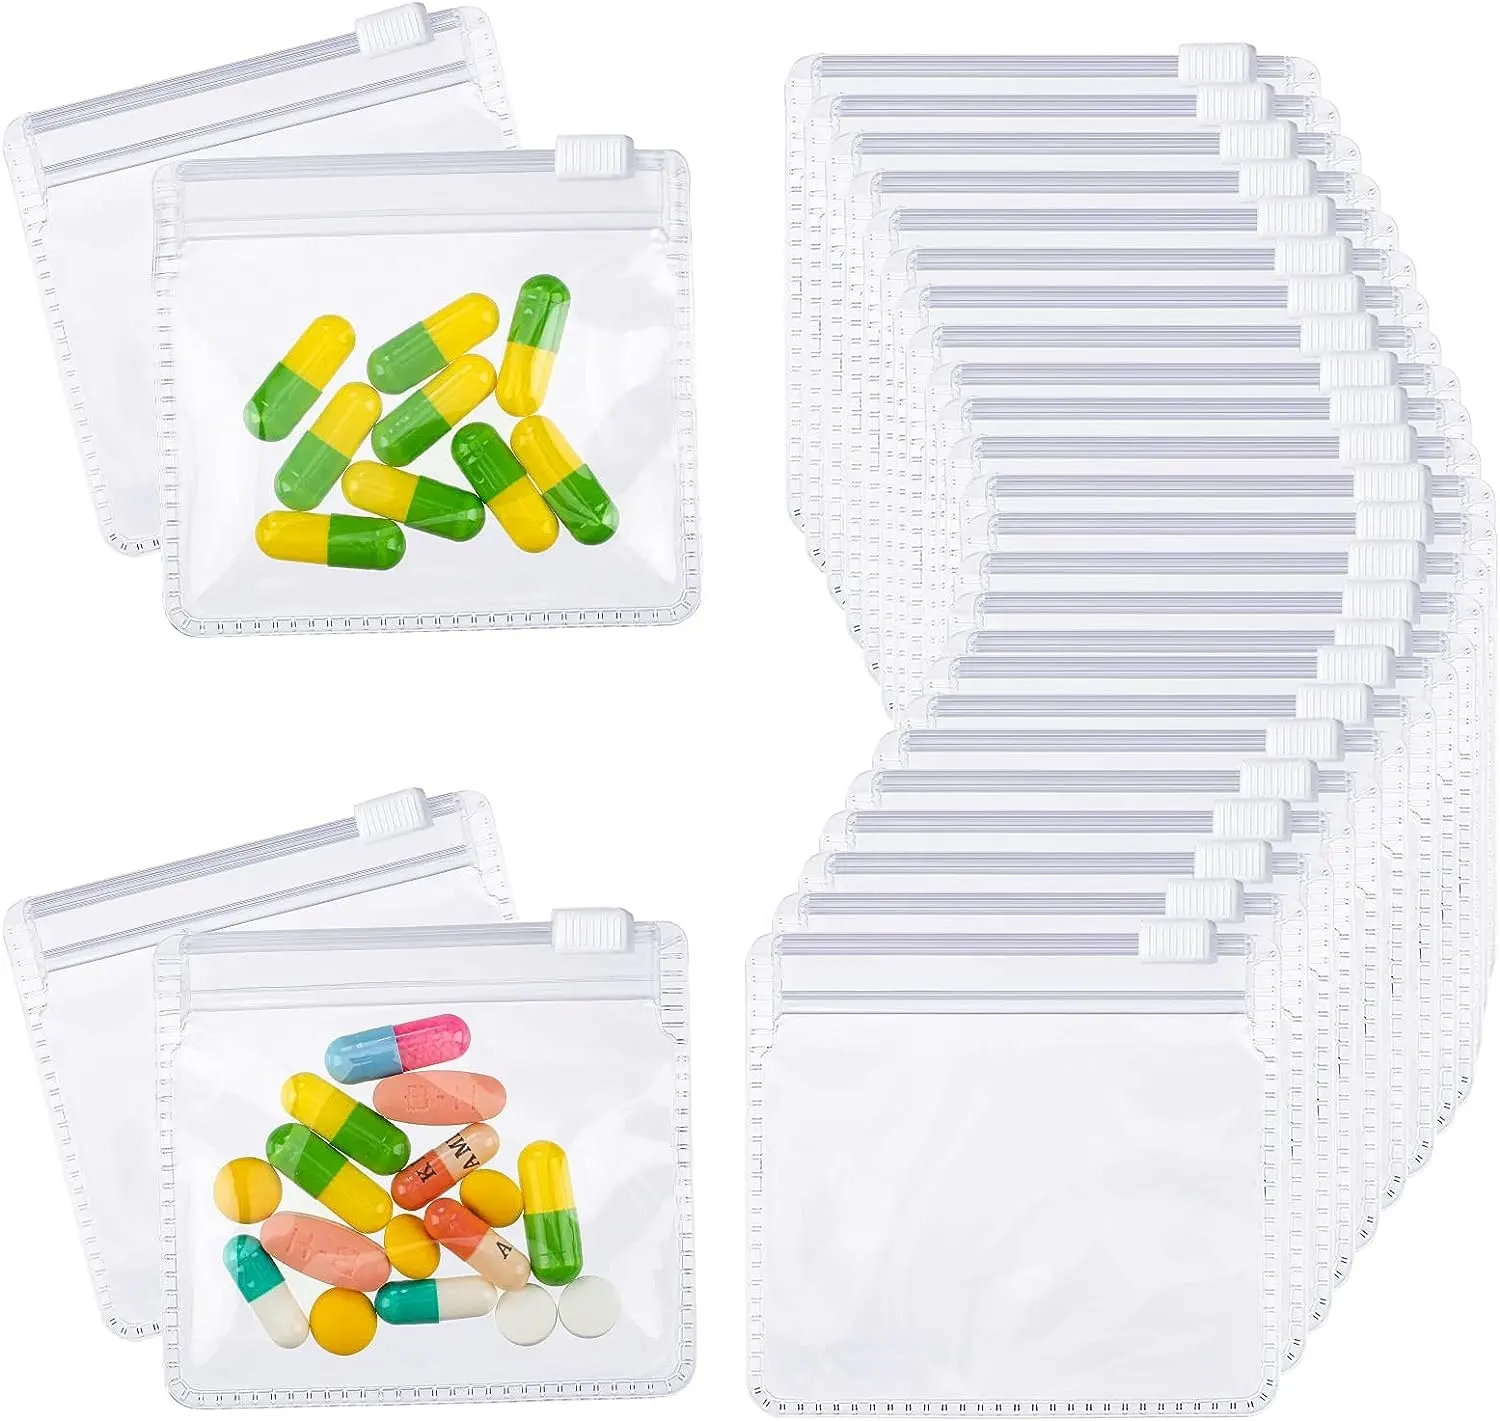 Wieder verwendbare versiegelte Reiß verschluss tasche, geeignet für Aufbewahrung boxen für Reise medizin, Schmuck und kleine handwerkliche Medizin taschen